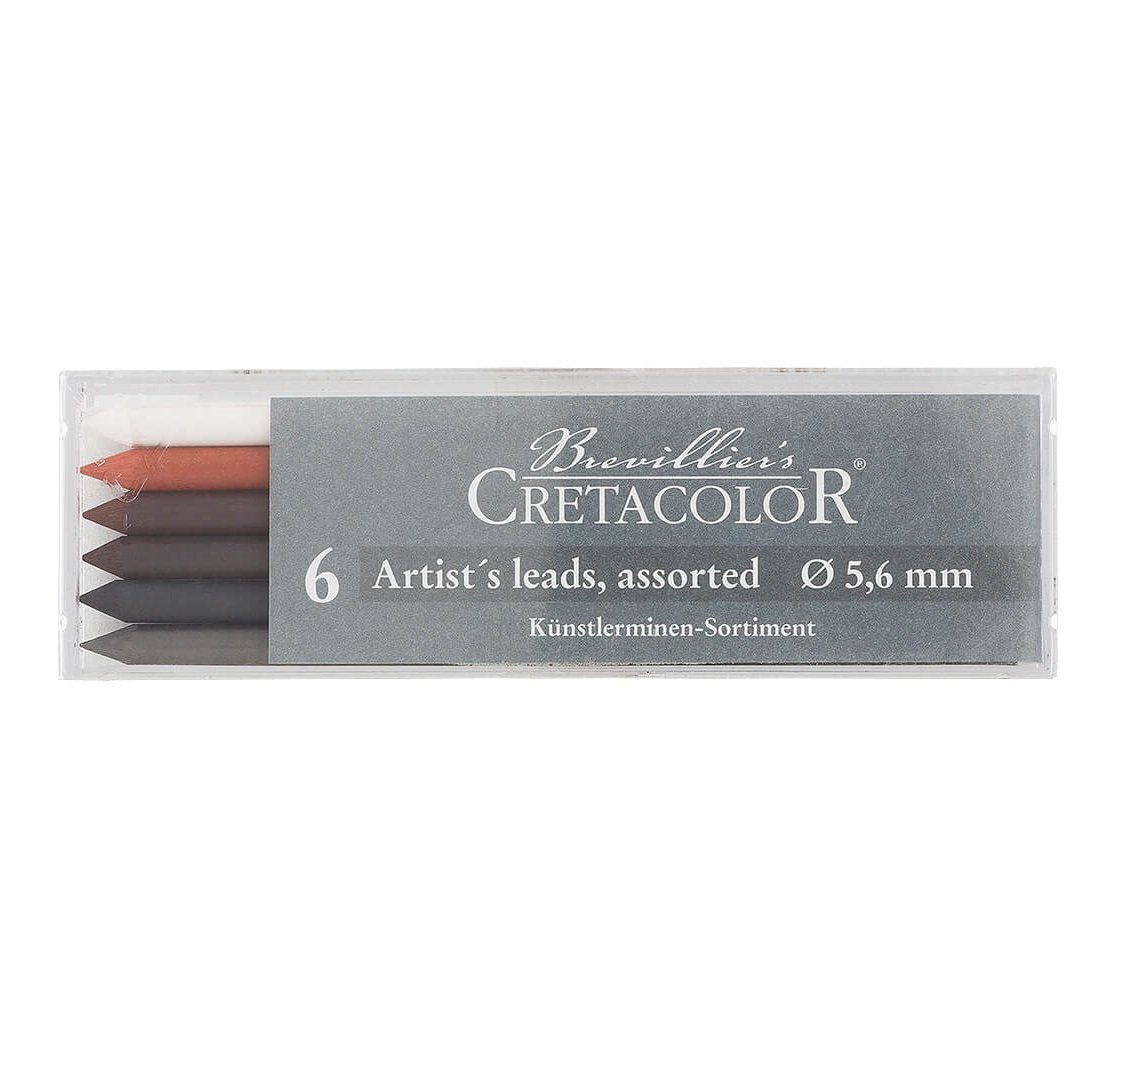 Brevilliers Cretacolor Bleistift 264 00, Künstlerminen Set 6-teilig,  Ölpastellkreiden - Minendurchmesser ca. 5,6mm - Made in Austria